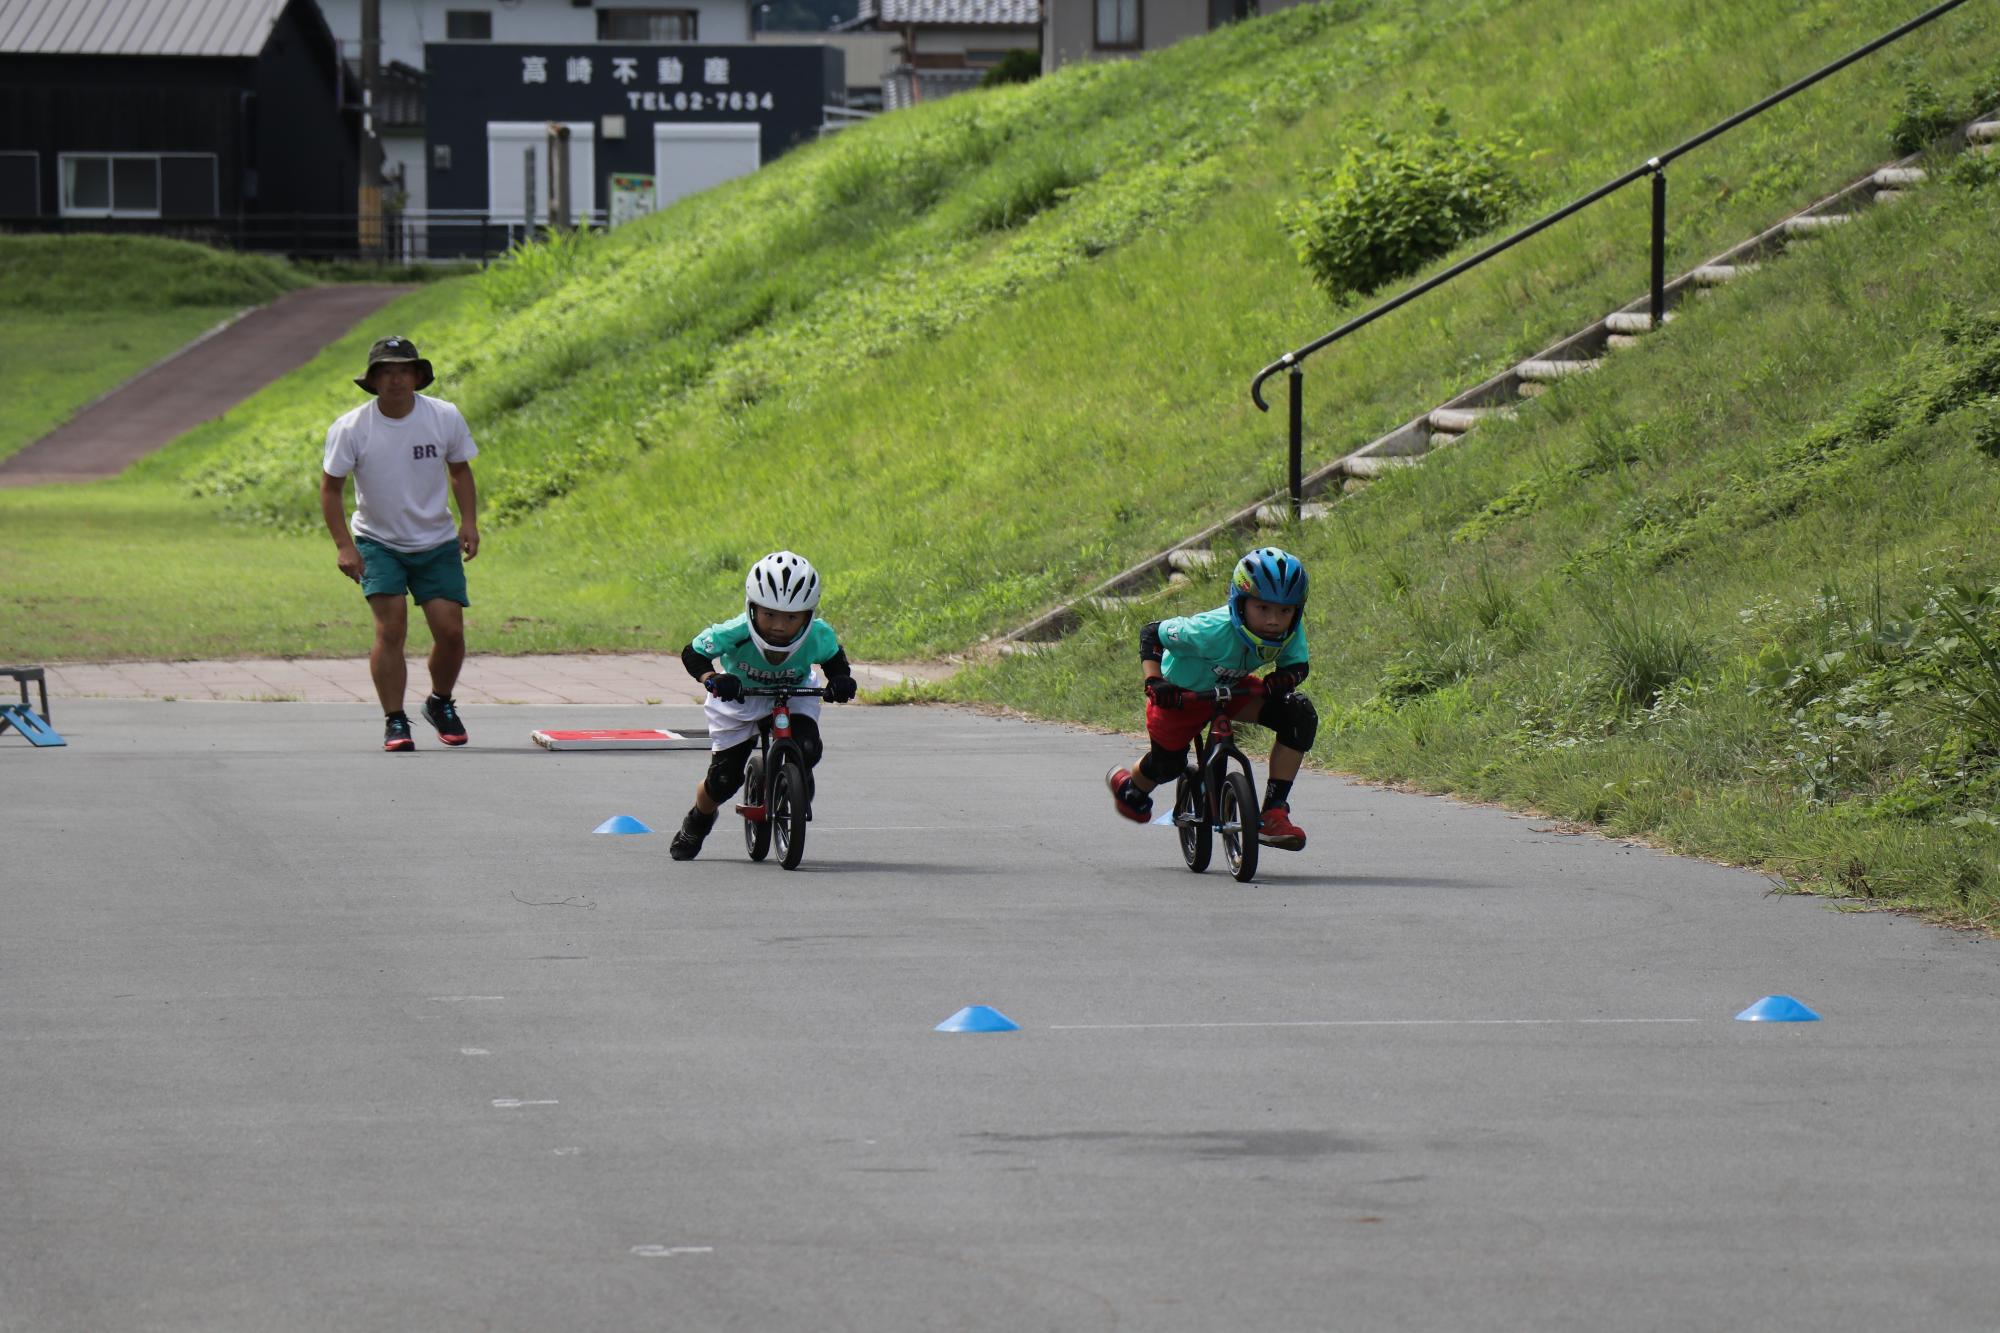 せせらぎ公園で植田さんと弟の瑛士さんがランバイクに乗り、直線のコースを走って競争している写真